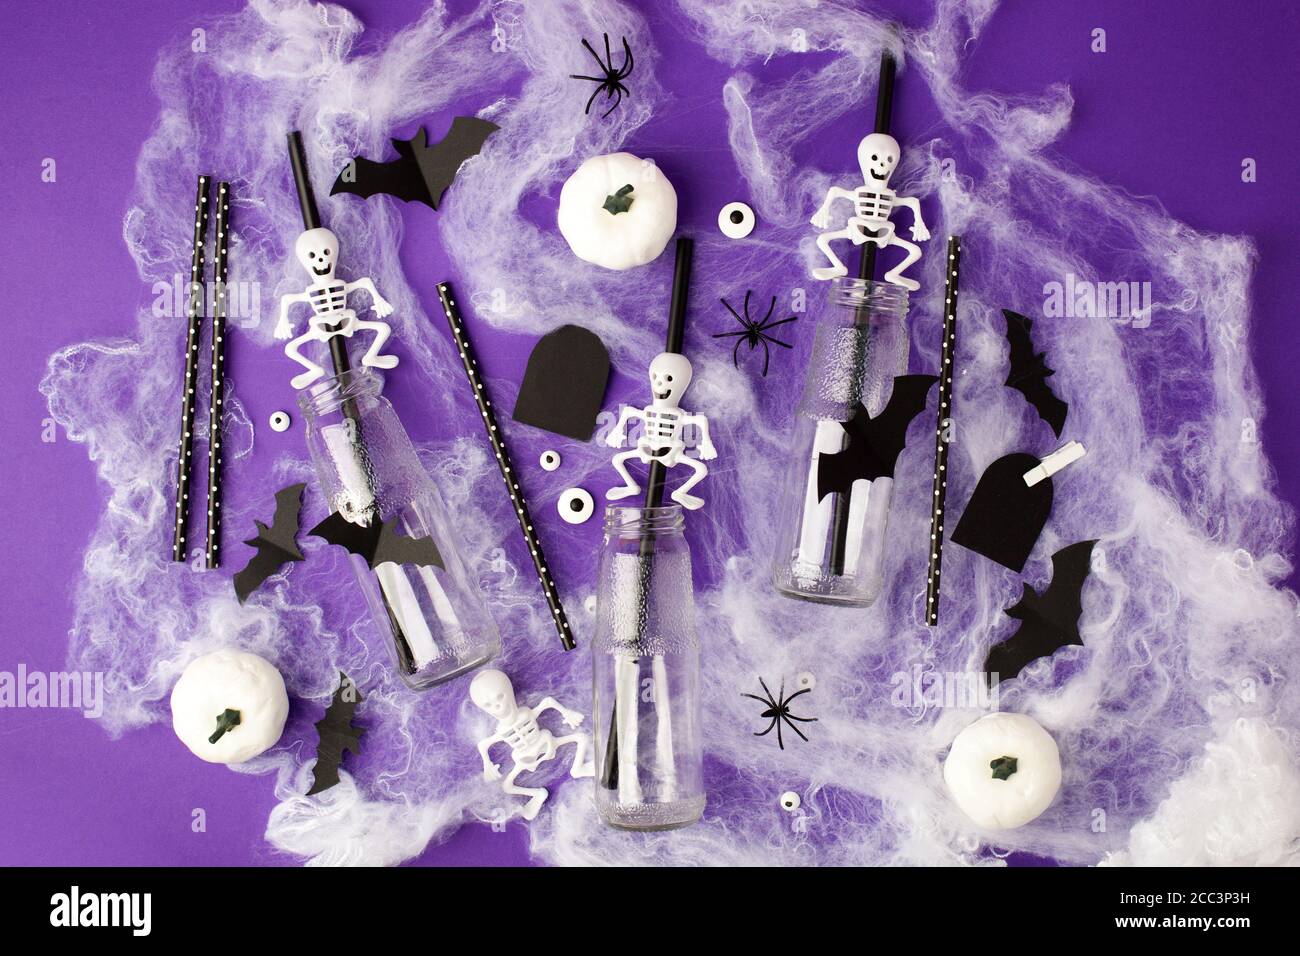 Joyeux Halloween concept de vacances. Décorations effrayantes, toile d'araignée, citrouilles, chauves-souris, bouteilles pour cocktails et pailles sur fond violet. Accueil de fête Banque D'Images